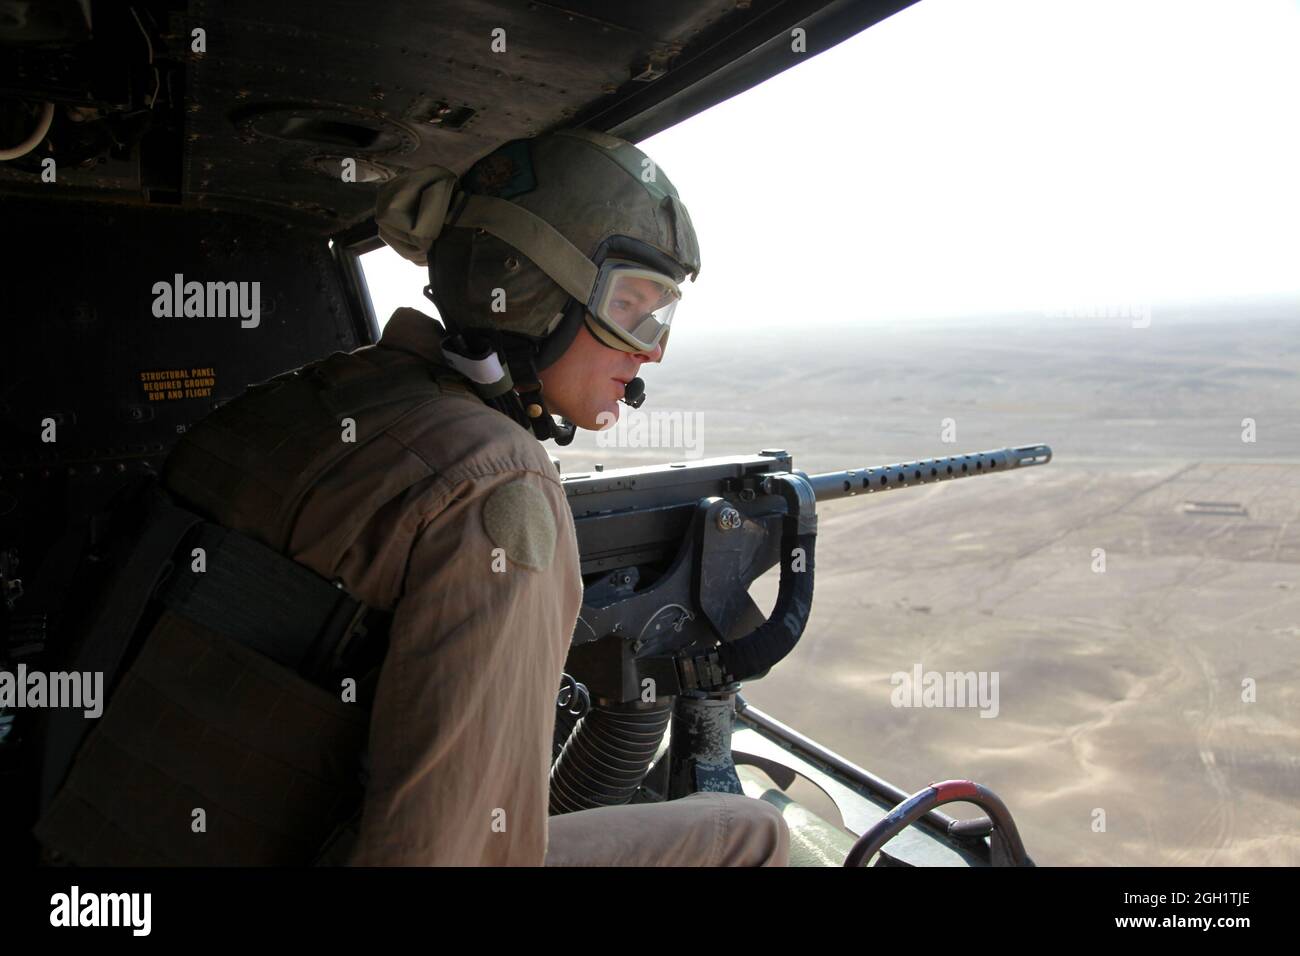 Sergent d'état-major des Marines des États-Unis Robert Wise du Marine Light Attack Helicopter Squadron (HMLA) 469 ans une mitrailleuse de calibre .50 sur un hélicoptère UH-1Y Venom Huey tout en fournissant la reconnaissance aérienne pour les Marines du 3e Bataillon de reconnaissance d'armes légères (3e LAR) dans la province de Helmand, en Afghanistan, le 20 juin 2012. Le HMLA-469 a assuré la reconnaissance aérienne et la sécurité des Marines de la 3e LAR pendant l'opération Halberd V afin d'empêcher la distribution de la contrebande à l'appui des opérations de lutte contre l'insurrection. Banque D'Images